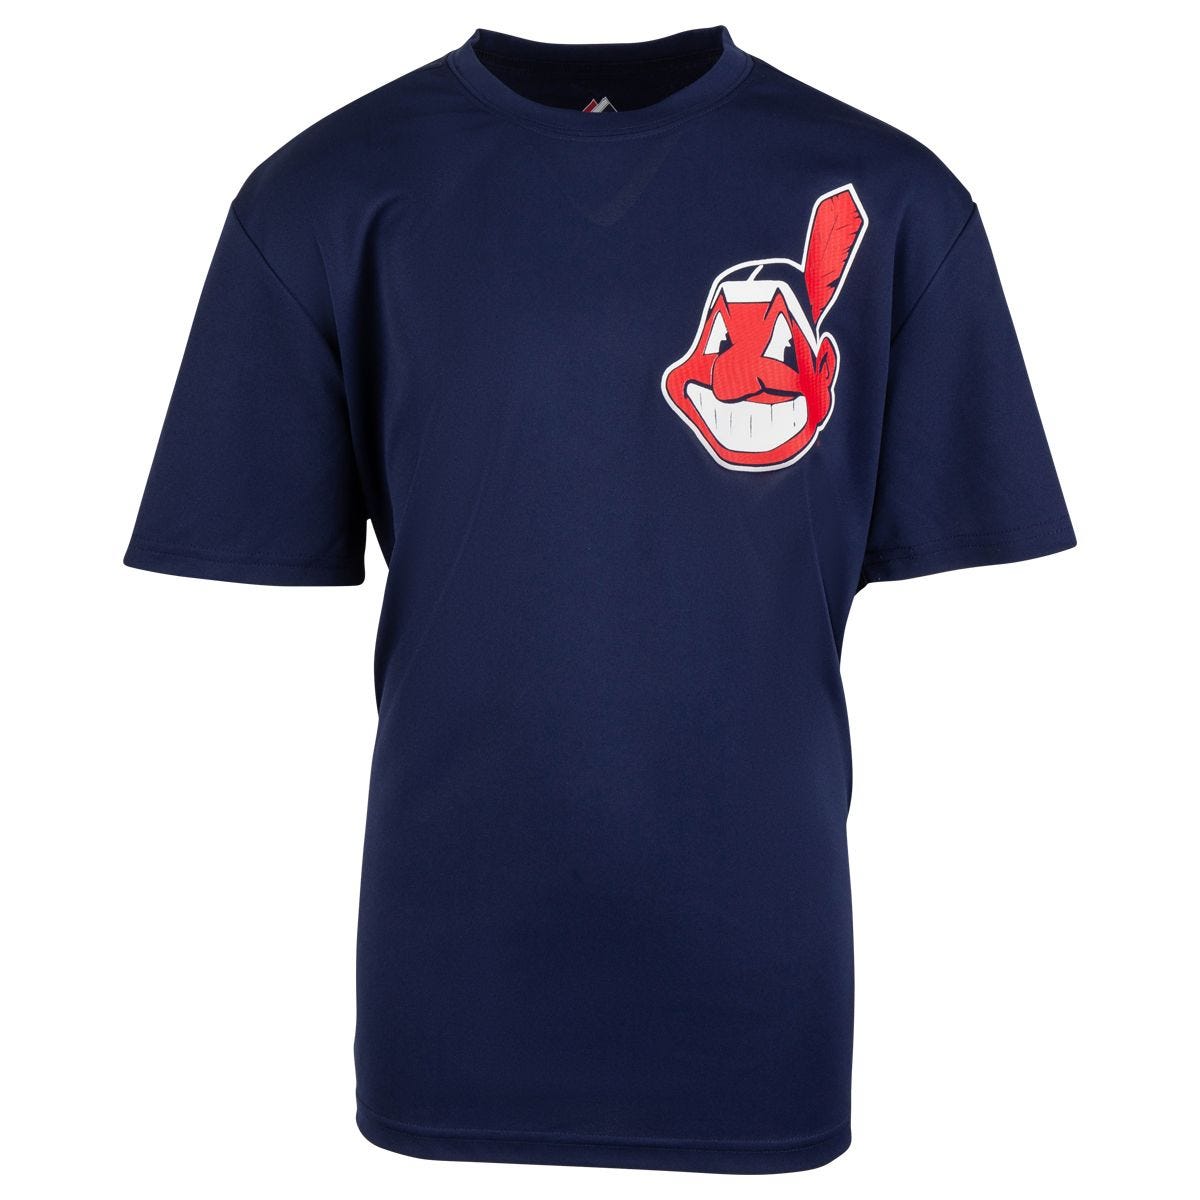 Cleveland Indians Majestic Script I V-Neck Jersey/Shirt Large Excellent+